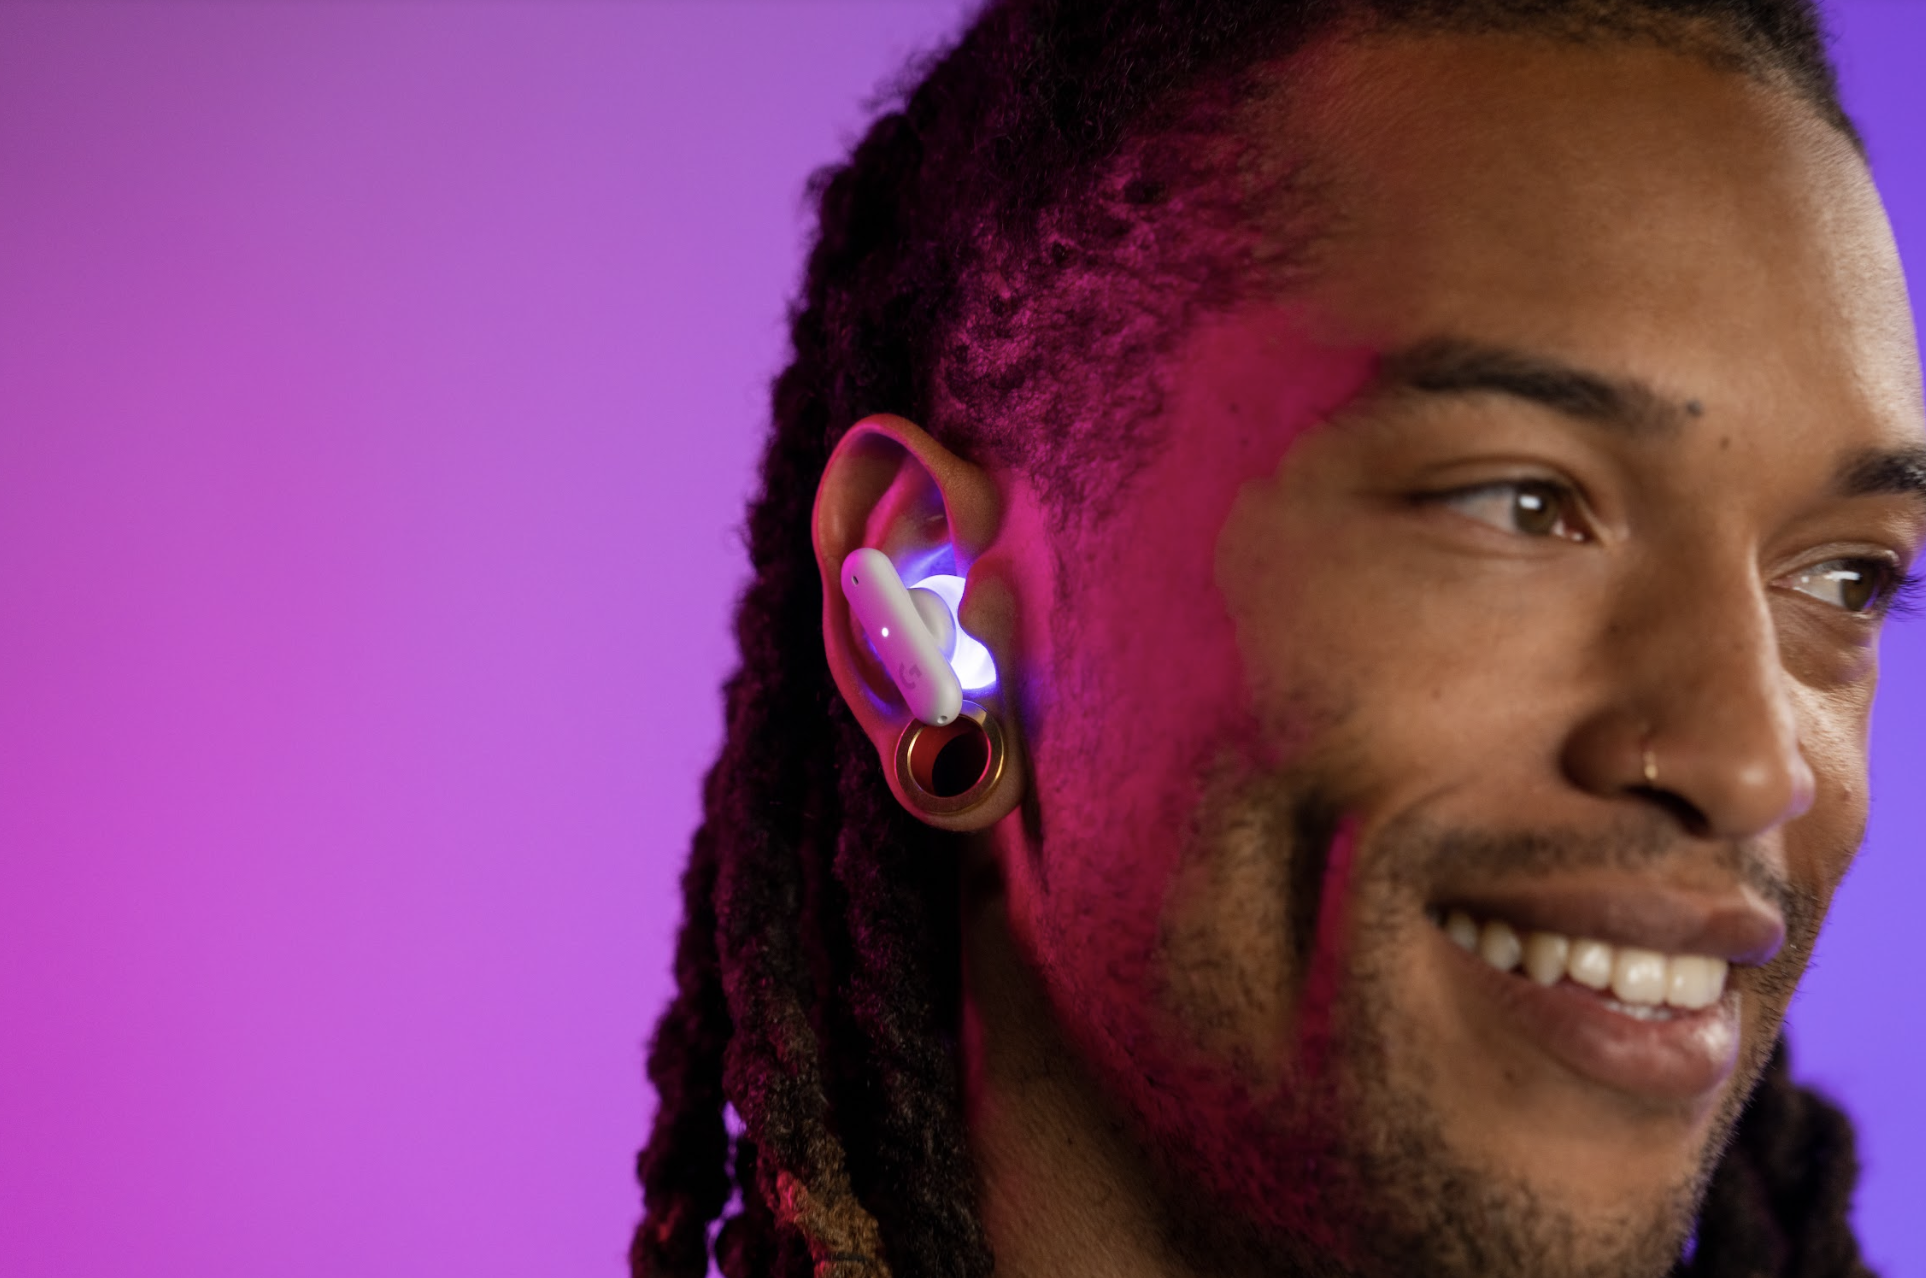 Logitech G wprowadza na rynek pierwsze w historii bezprzewodowe słuchawki douszne dla graczy – Logitech G FITS